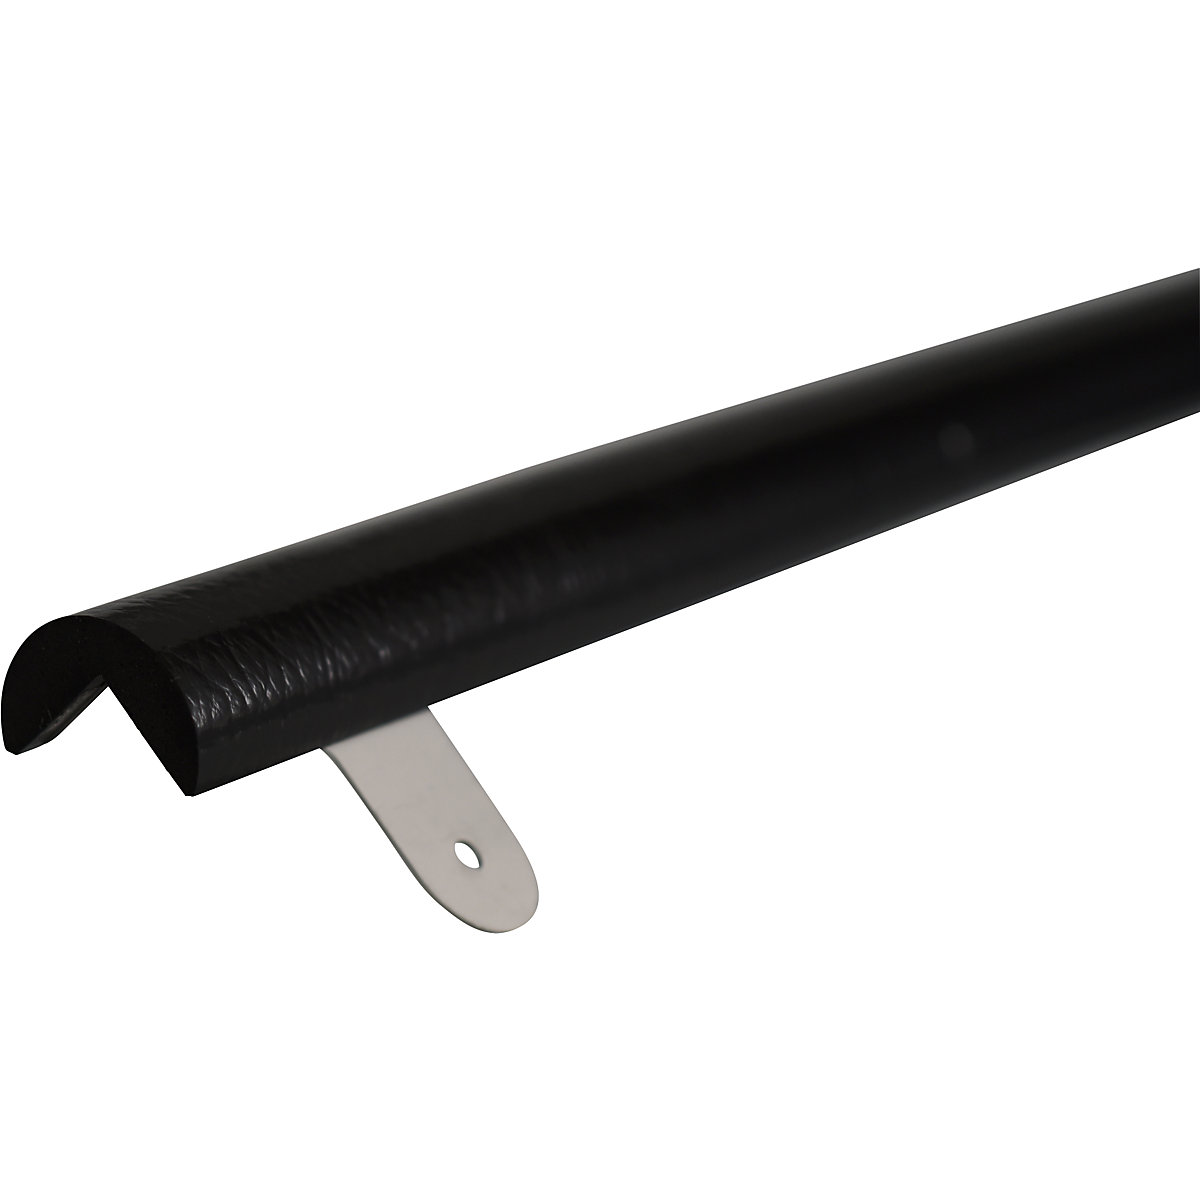 Protecție pentru colț Knuffi® cu șină de montaj – SHG, tip A, bucată de 1 m, negru